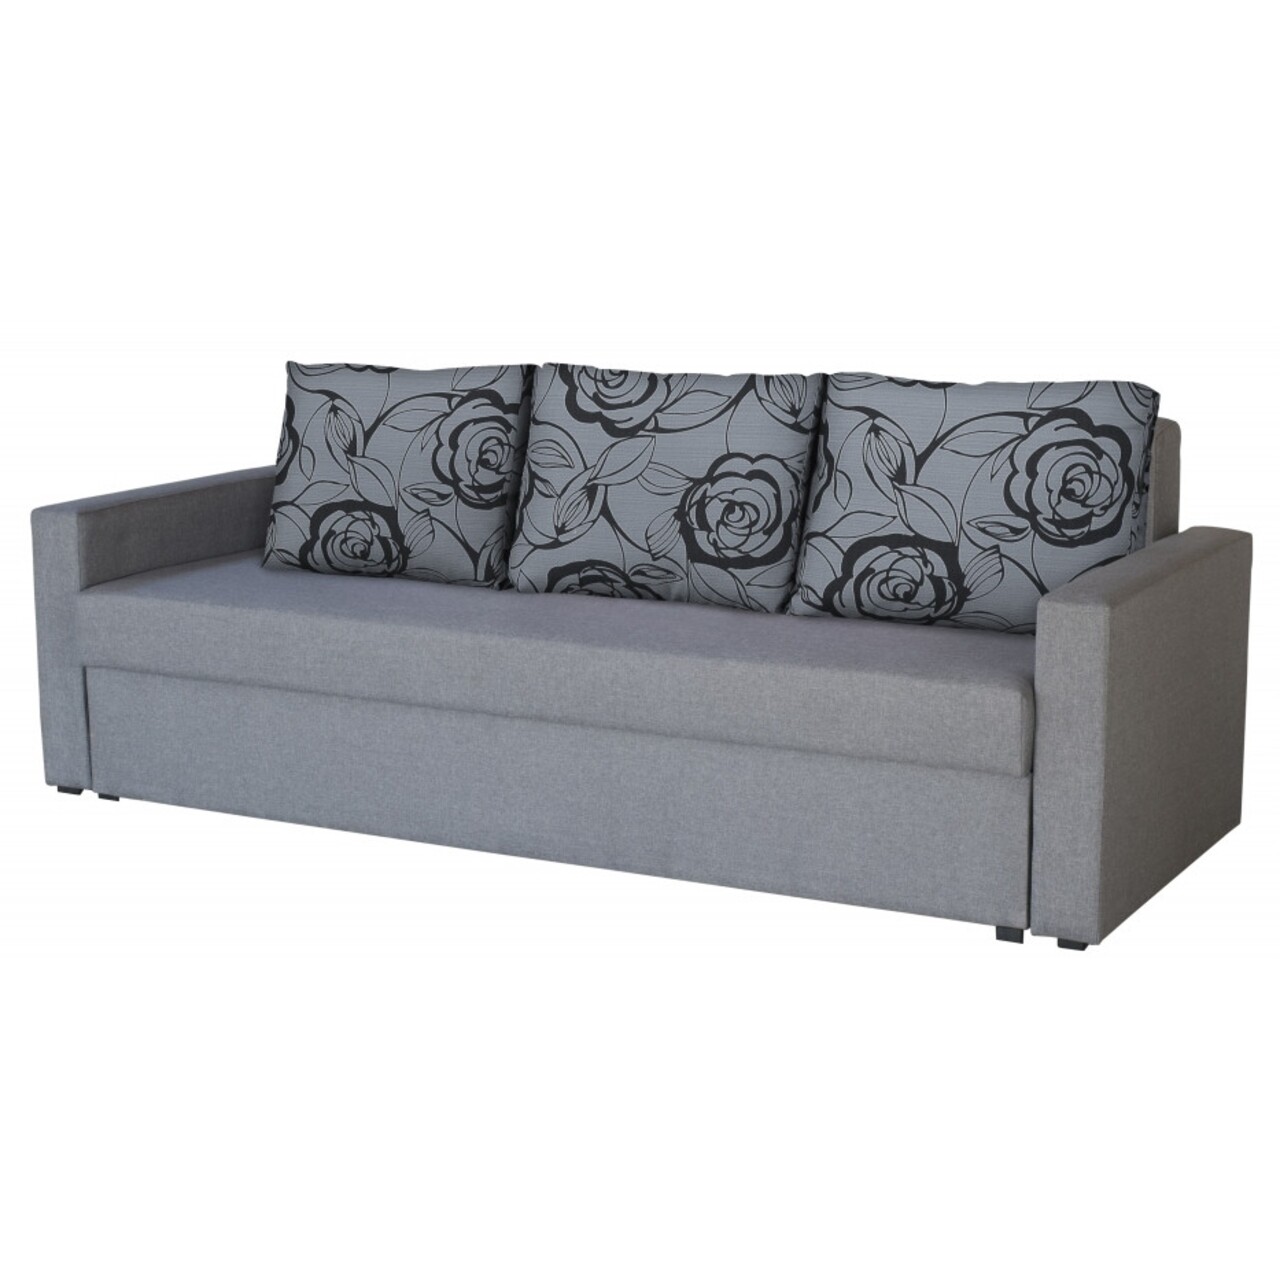 Bedora firenze grey flower kihúzható kanapé 218x85x85 cm, tárolóládával